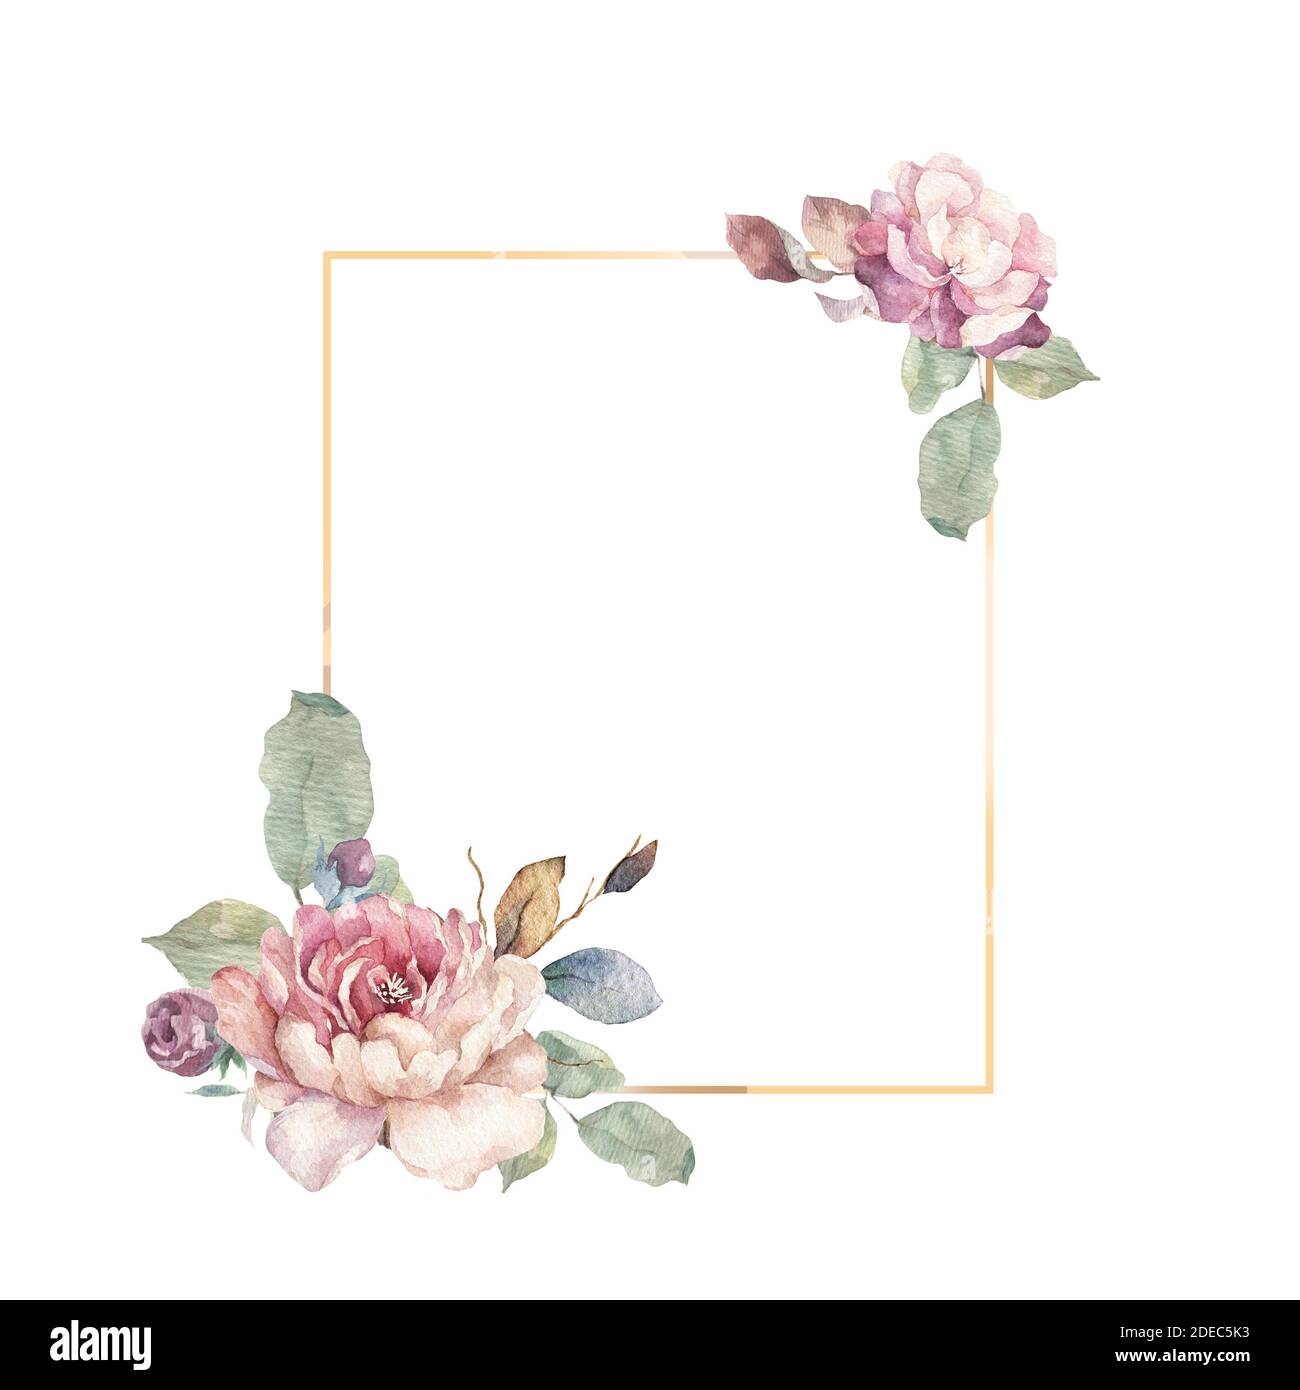 Invito al matrimonio, fiori rosa con foglie e biglietto d'invito floreale, bouwuet con stampa geometric Golden frame. Sfondo bianco Foto Stock